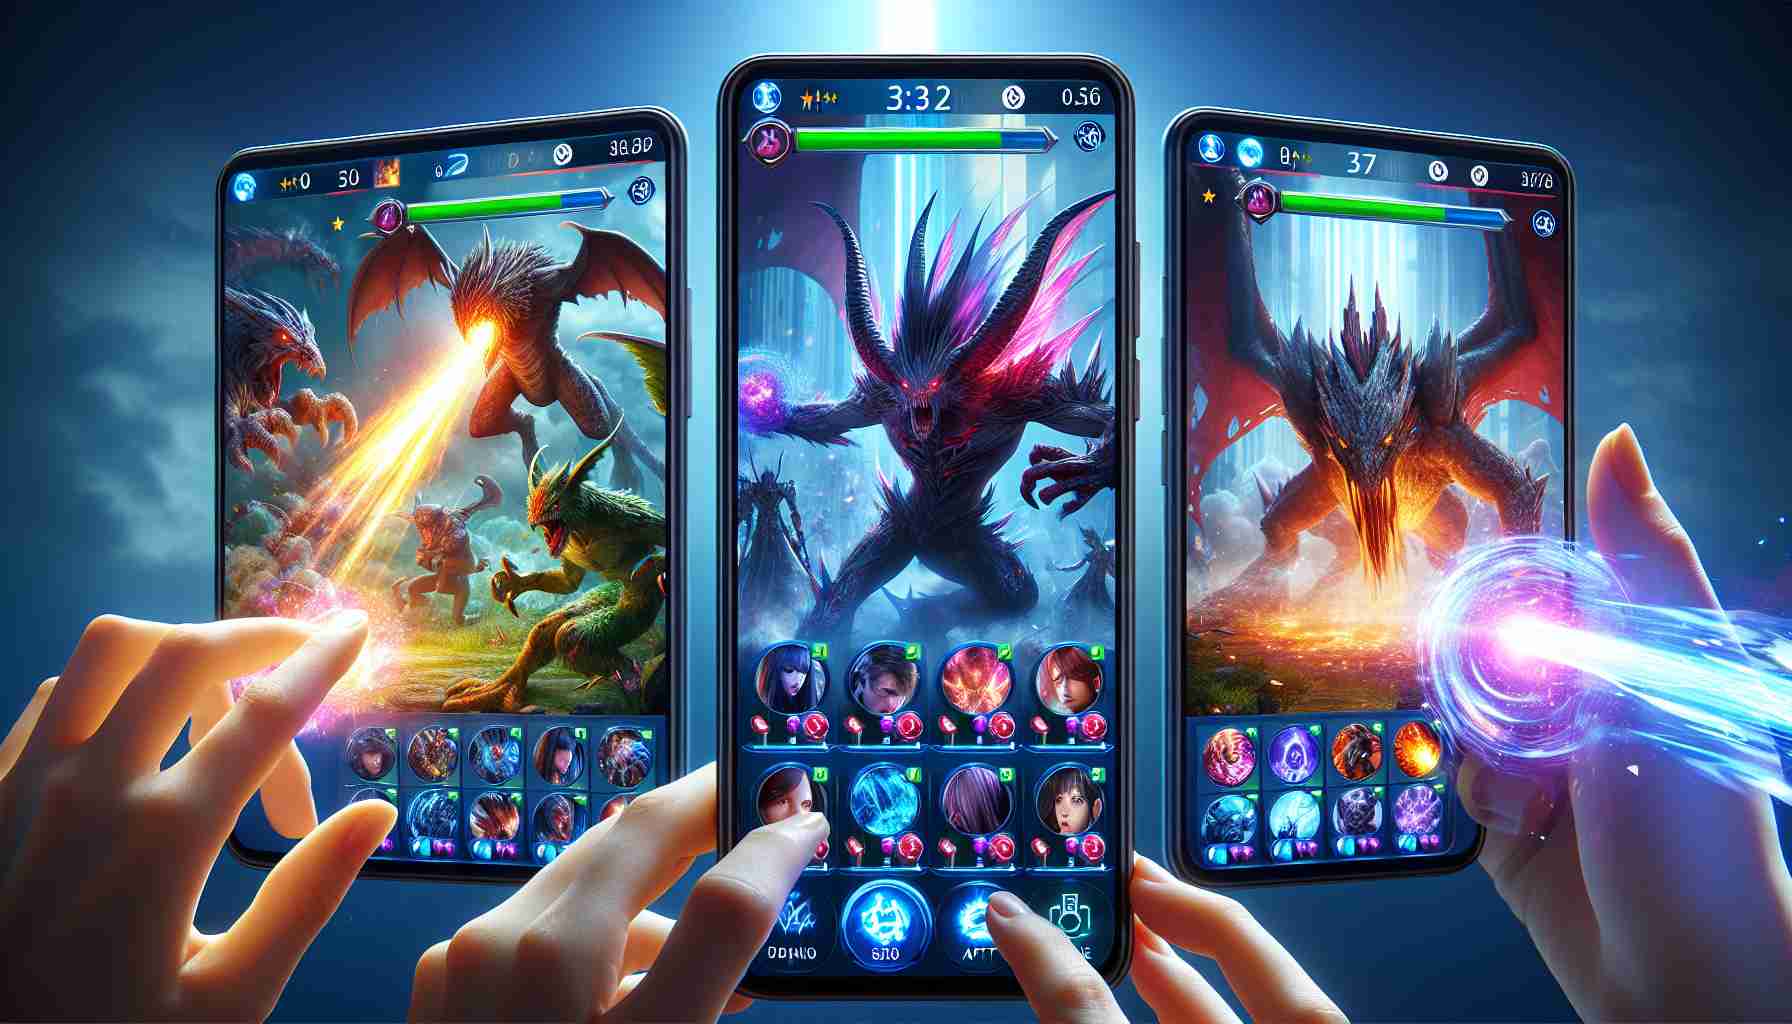 Le nouveau jeu mobile propose des batailles épiques contre des monstres virtuels